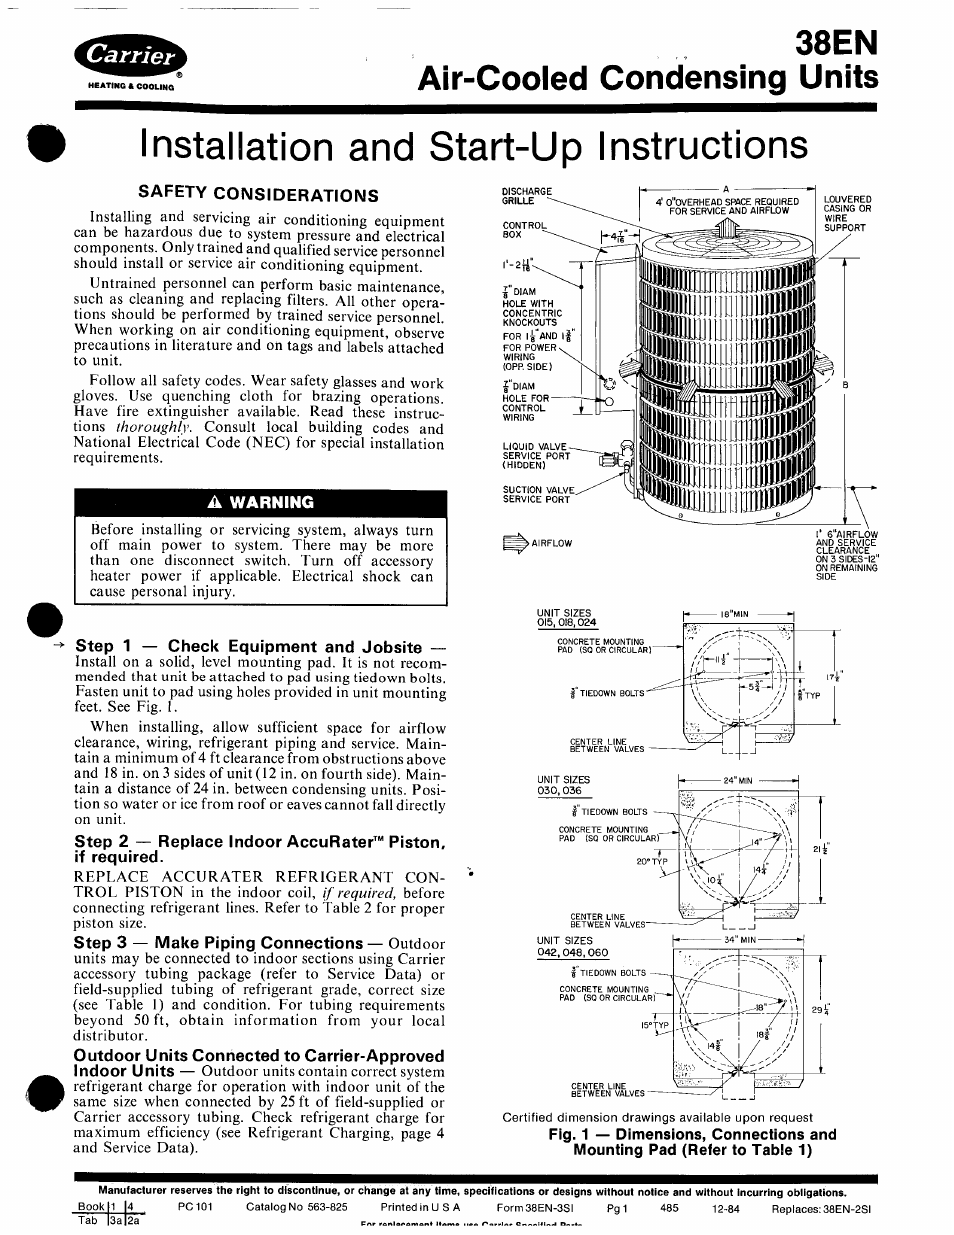 Carrier 38EN User Manual | 6 pages | Original mode